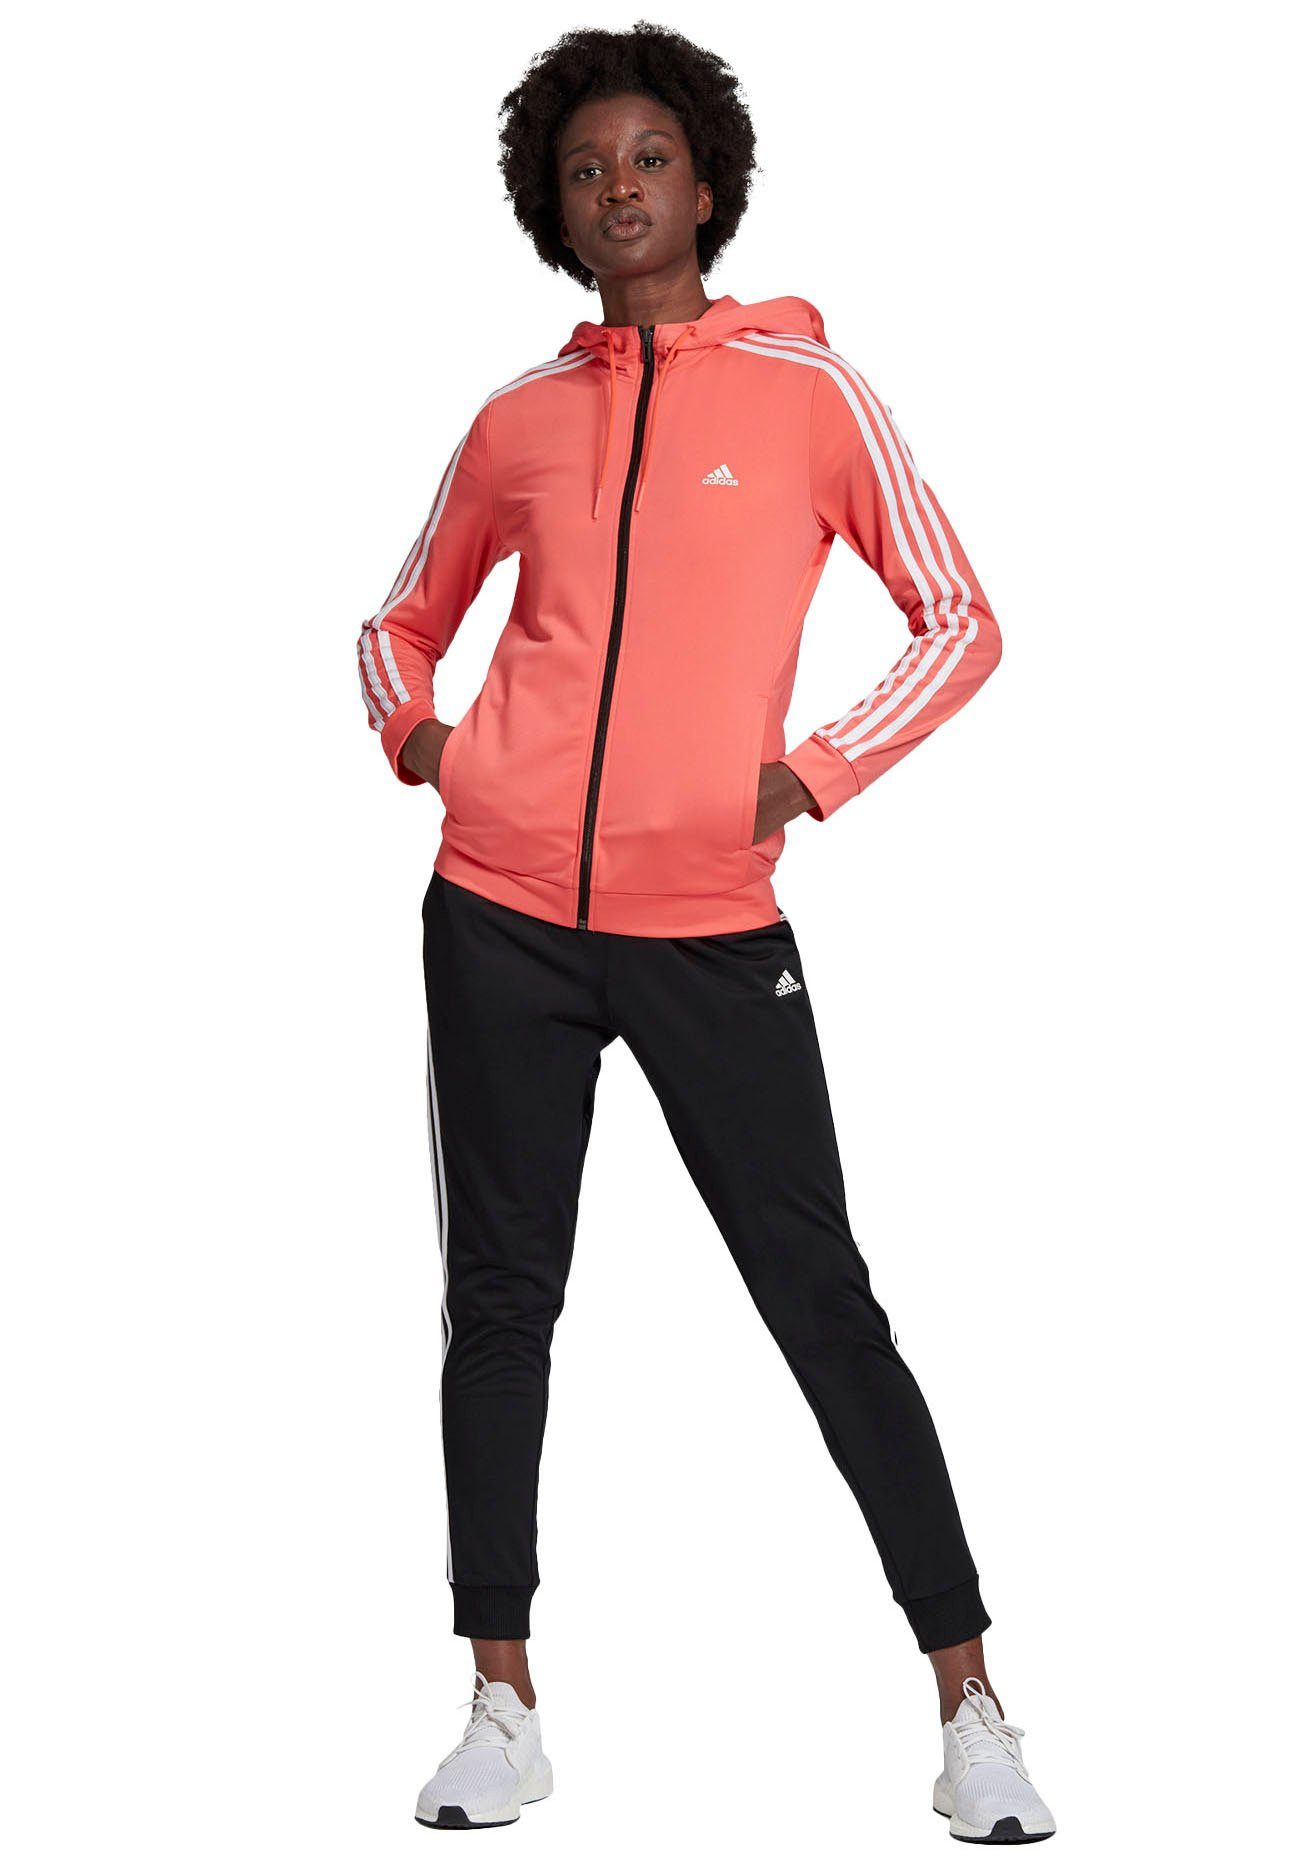 adidas Damen Sportanzüge online kaufen | OTTO